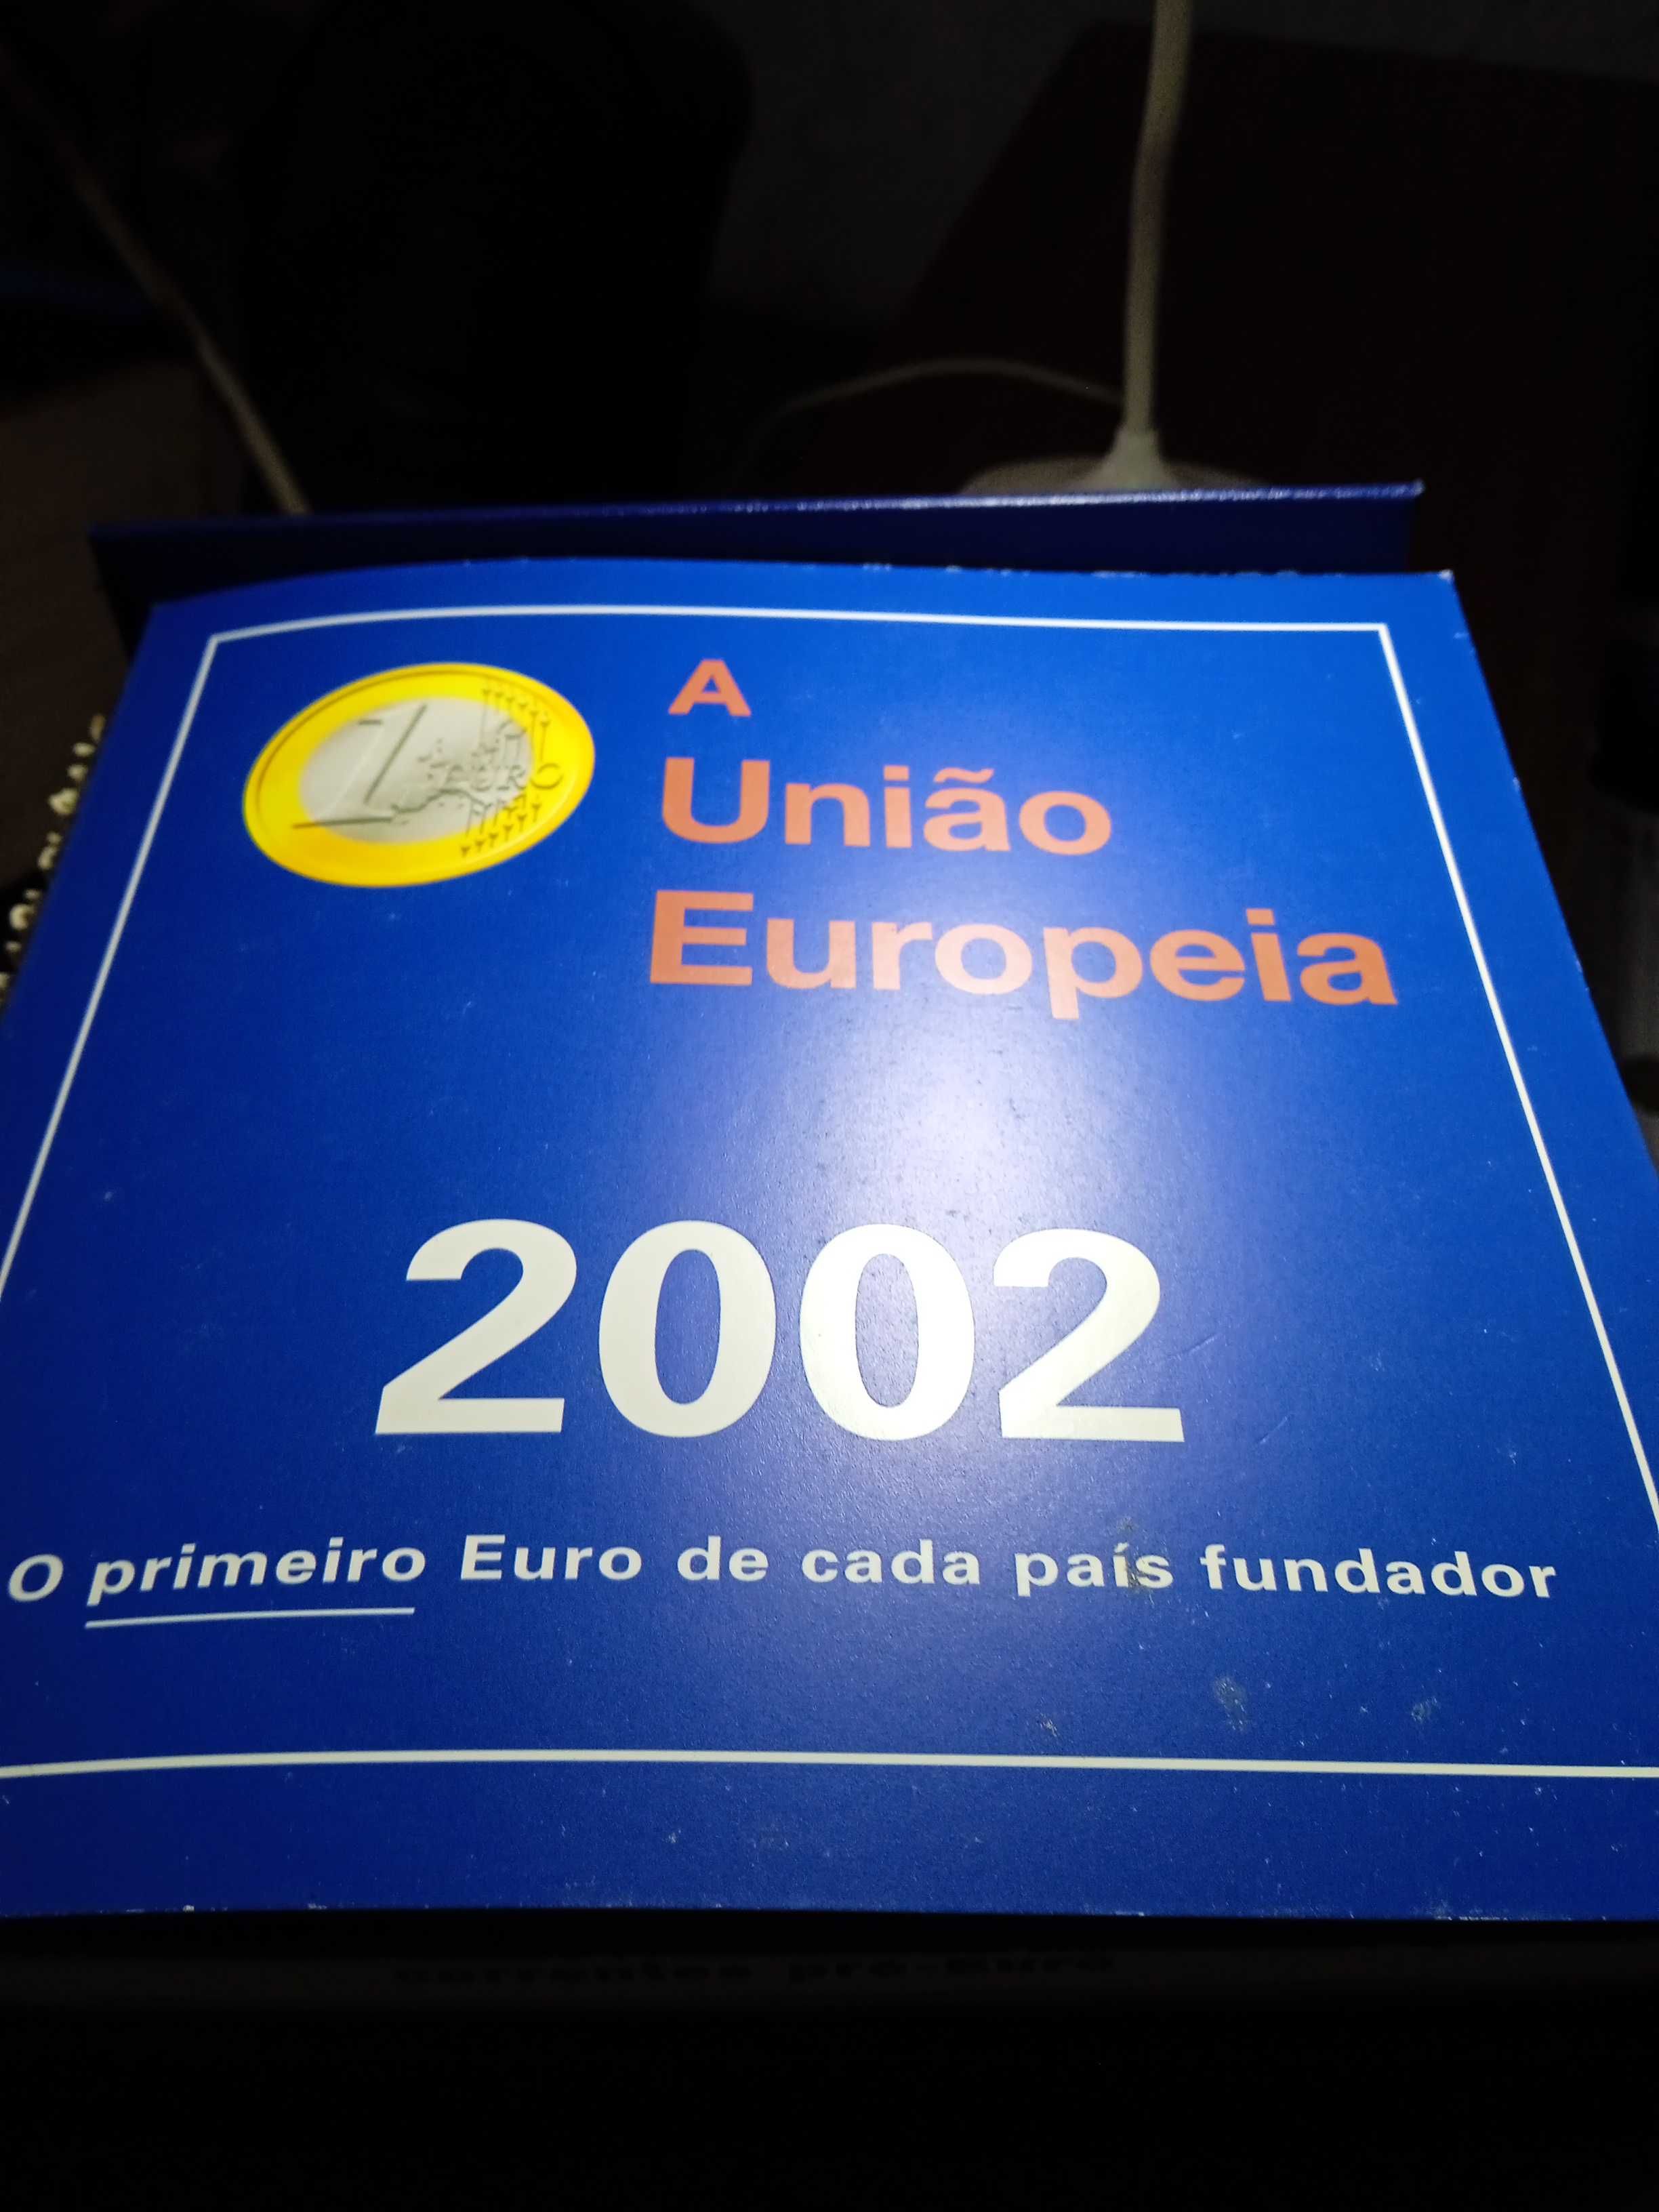 Álbum com as 12 primeiras moedas  da união europeia lançado em 2002